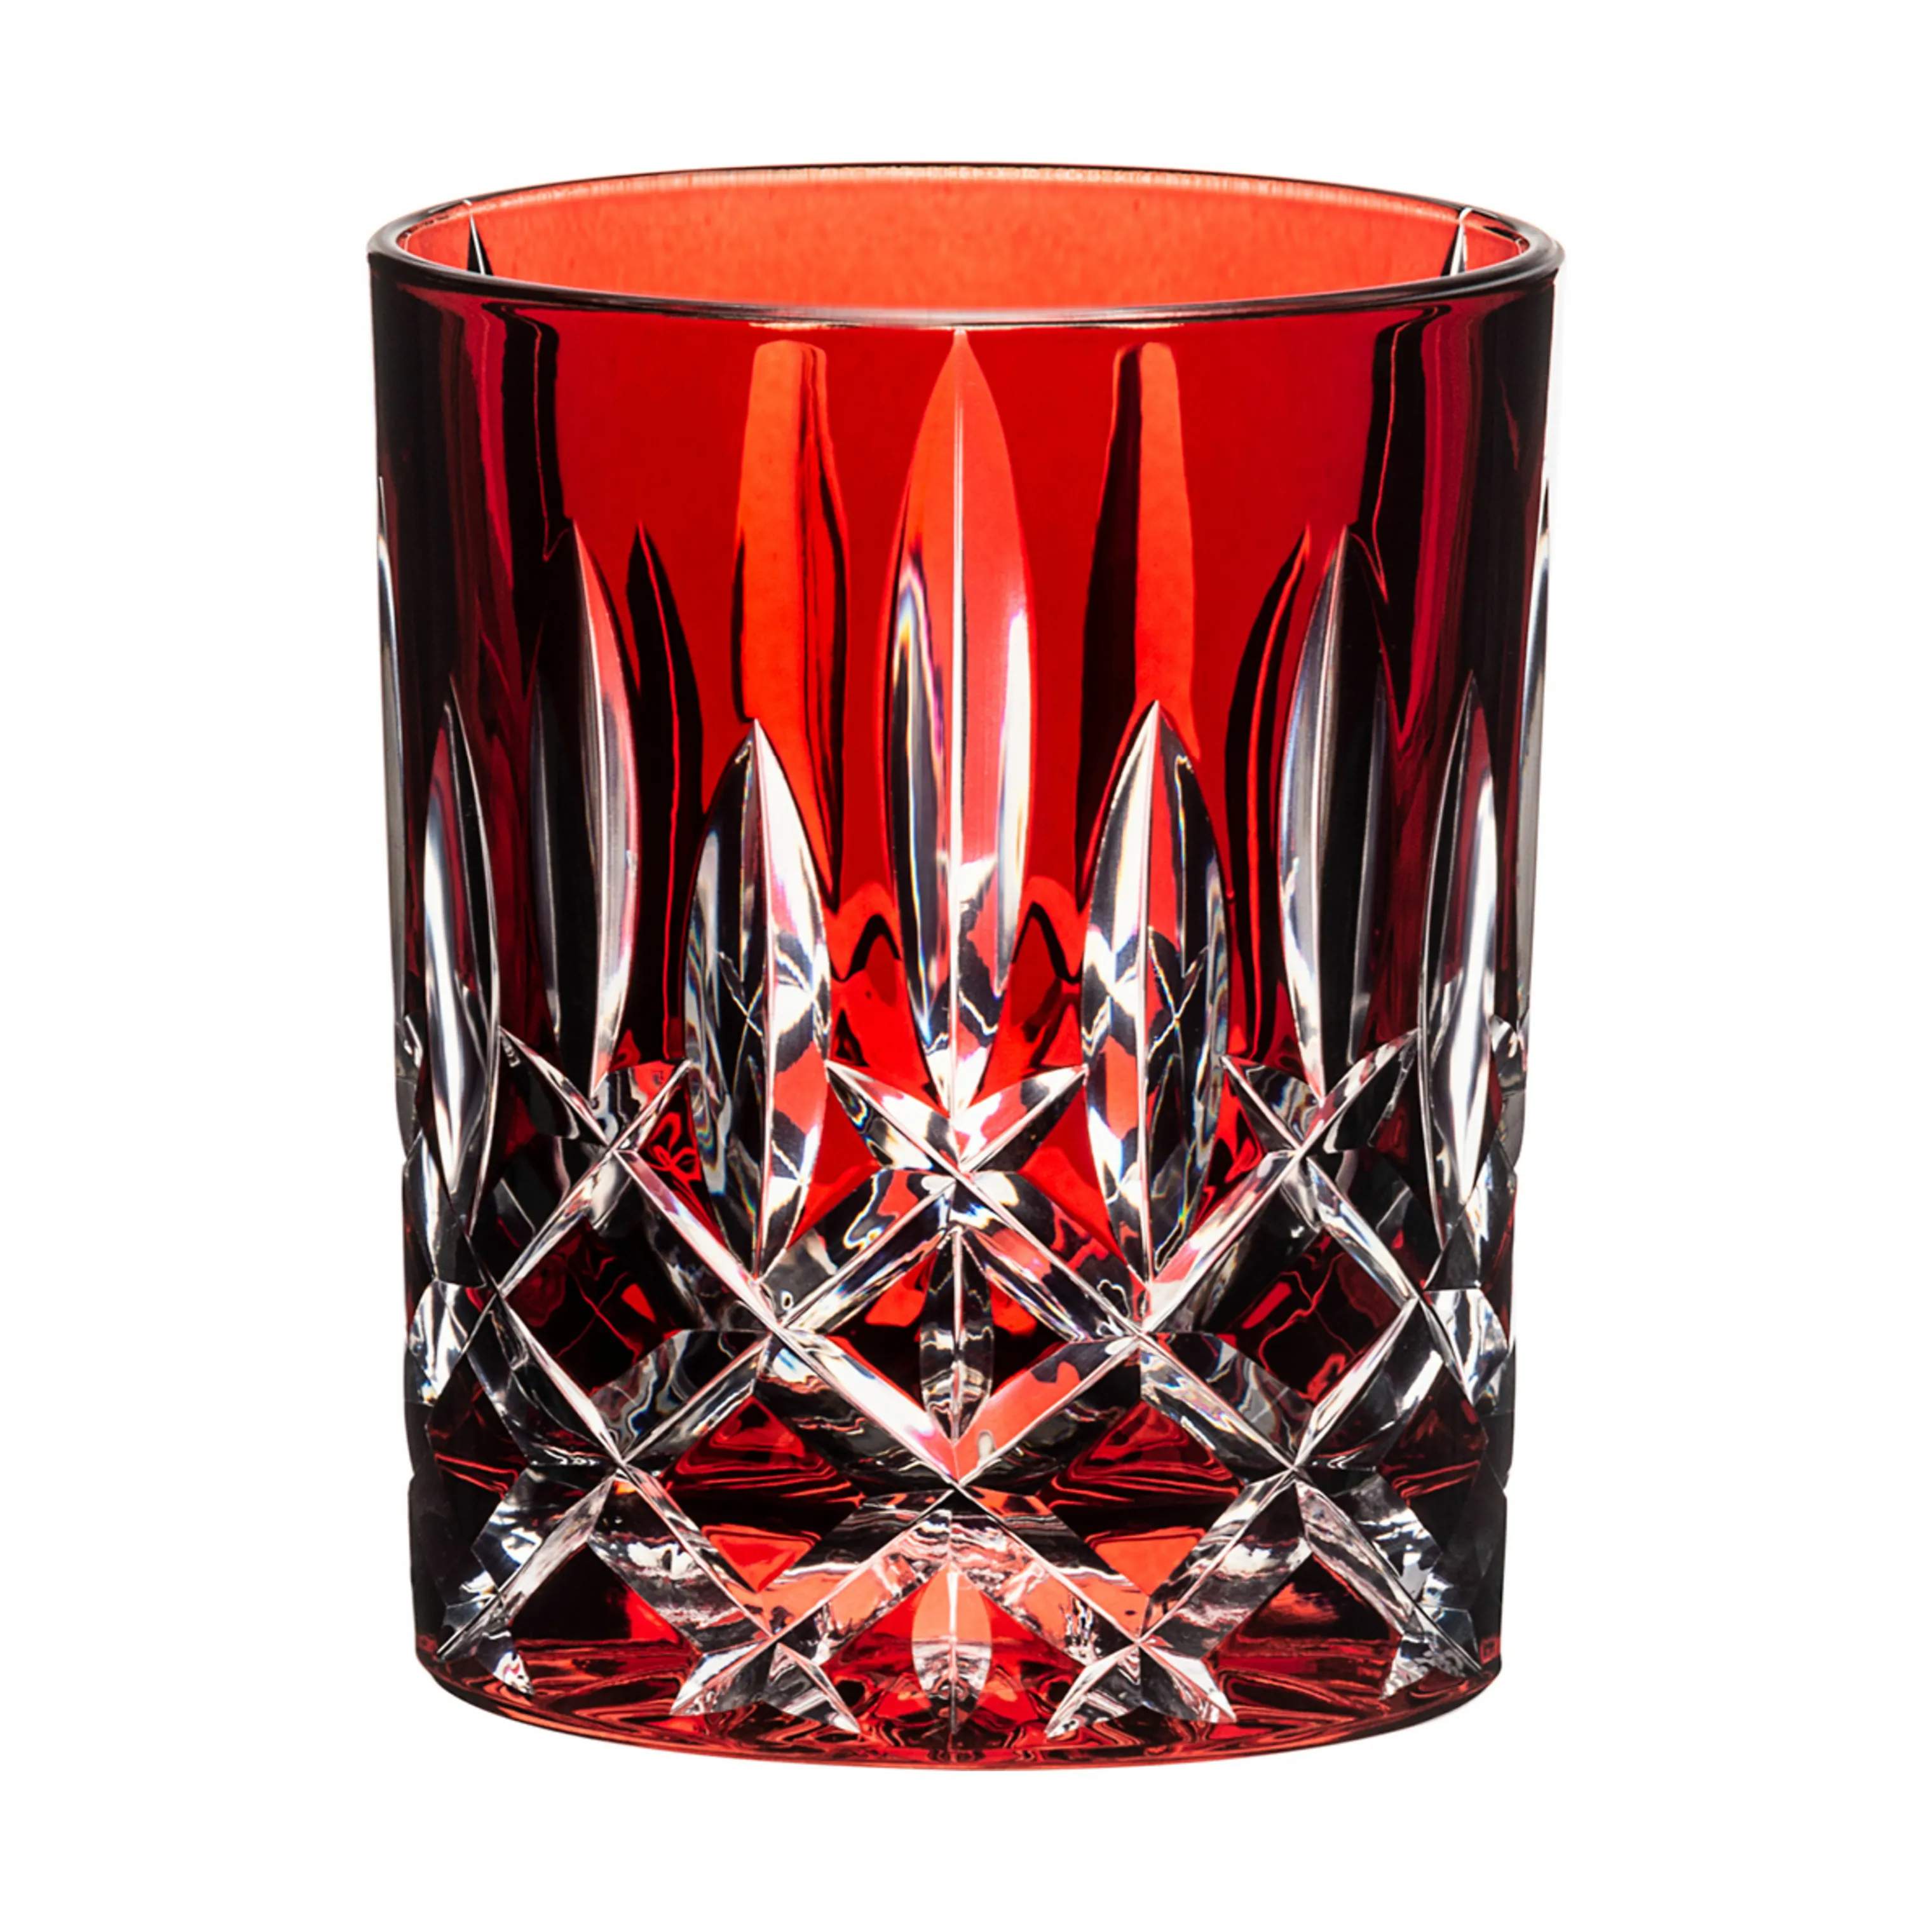 Laudon Vandglas, rød, large